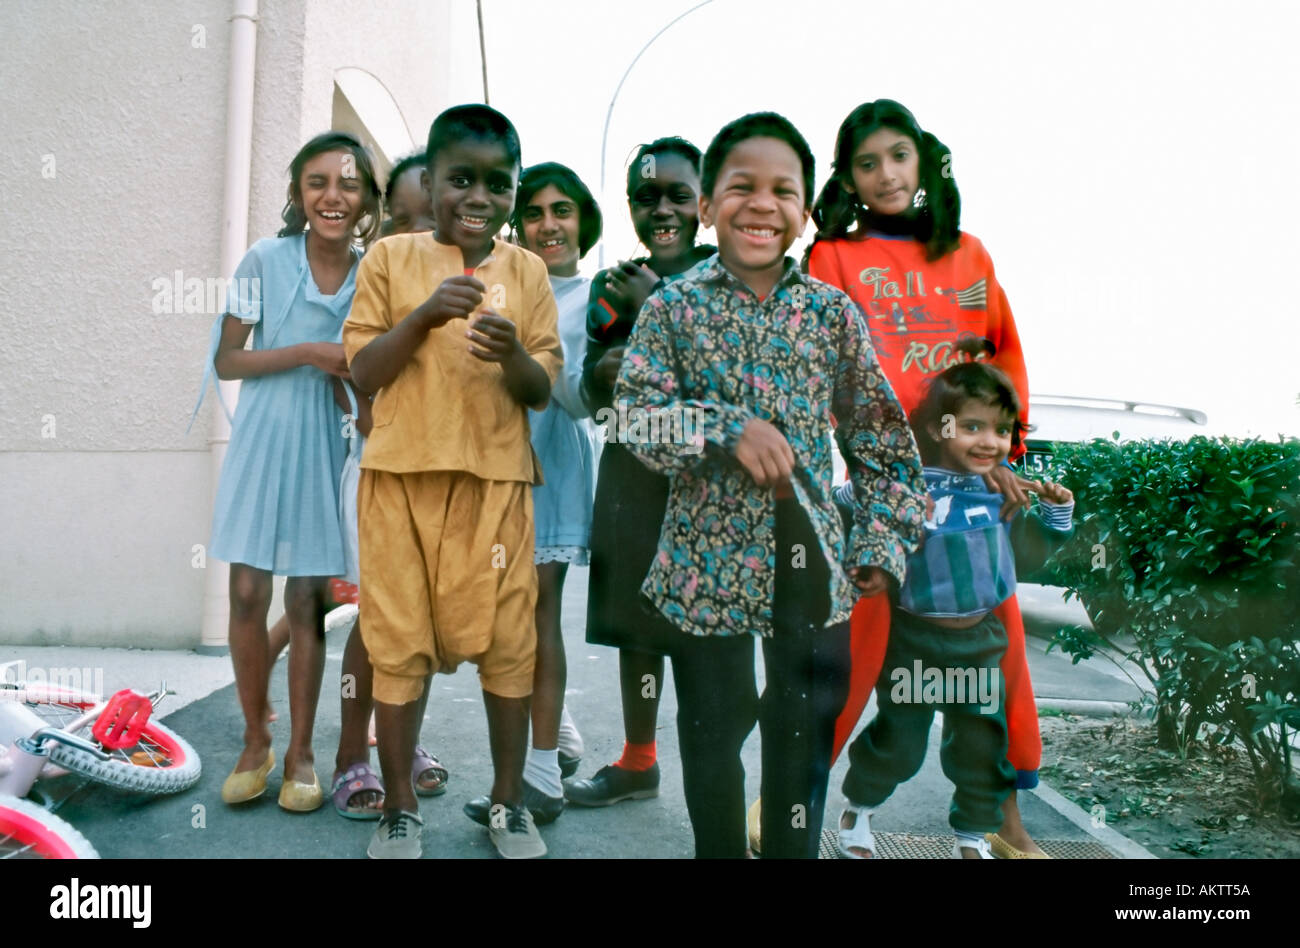 Multikultural, Paris Frankreich, Vorort, gemischte mittlere Gruppe Porträt von Minderheit Immigranten Herkunft Kinder in Vorstädten Wohnprojekte Migrantenfamilie Stockfoto